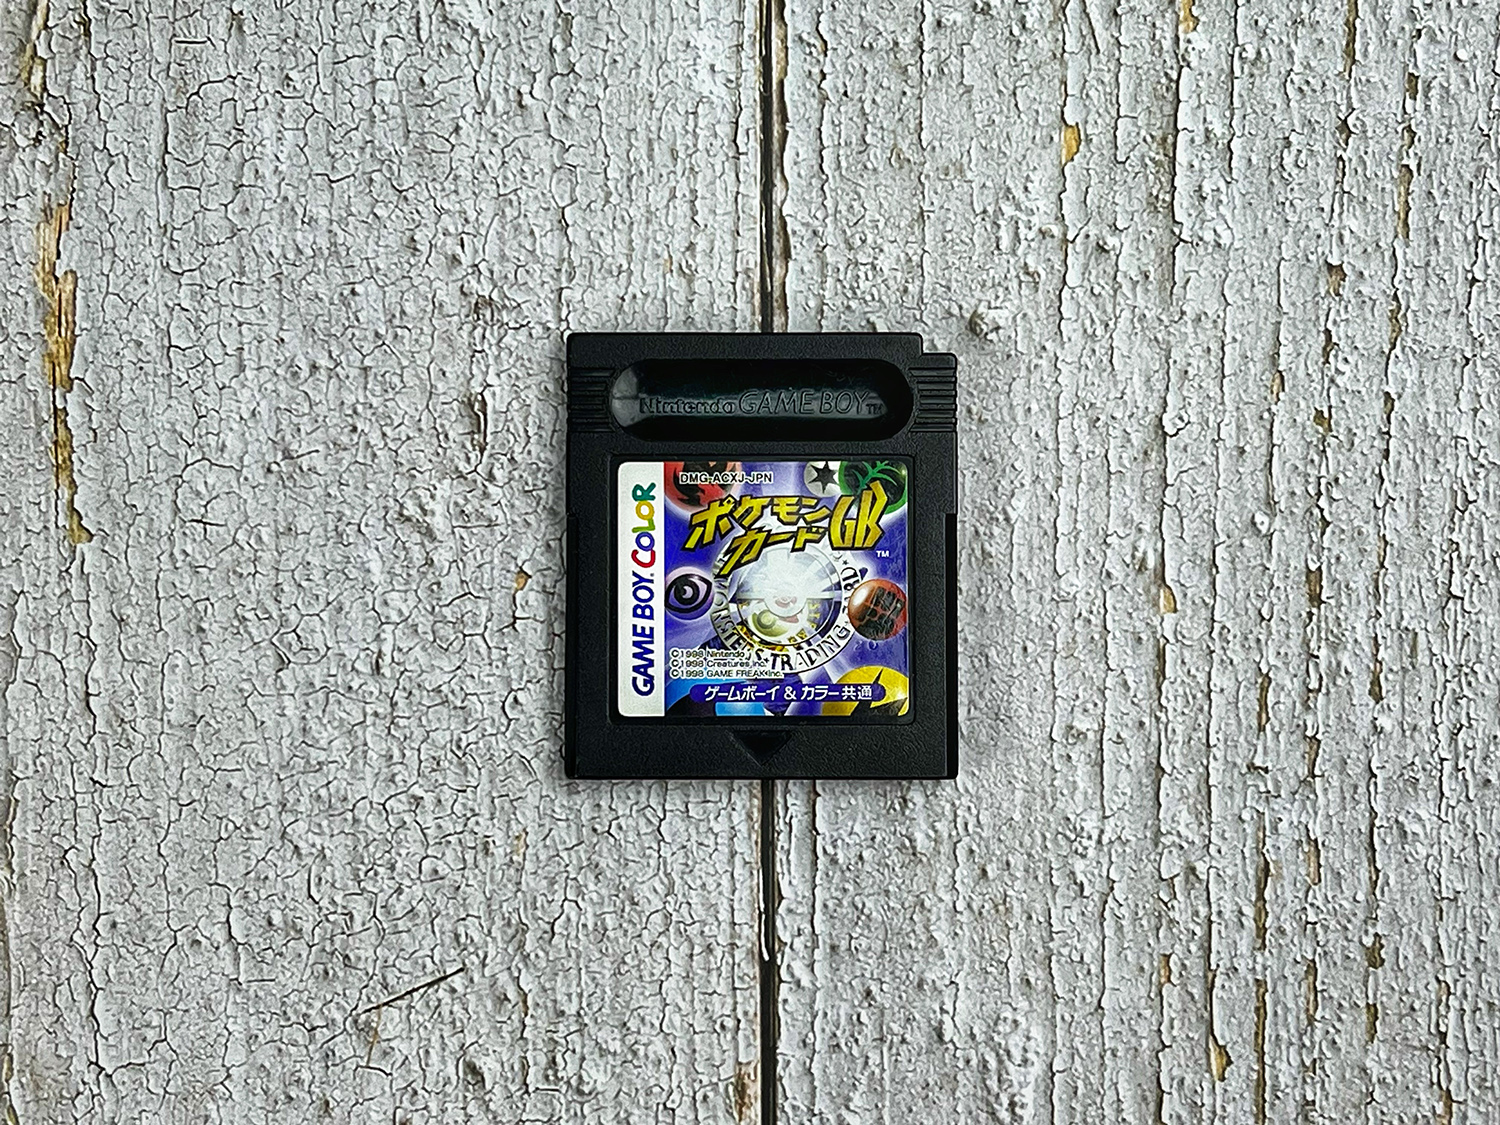 Game Boy игры совместимые с Game Boy Color